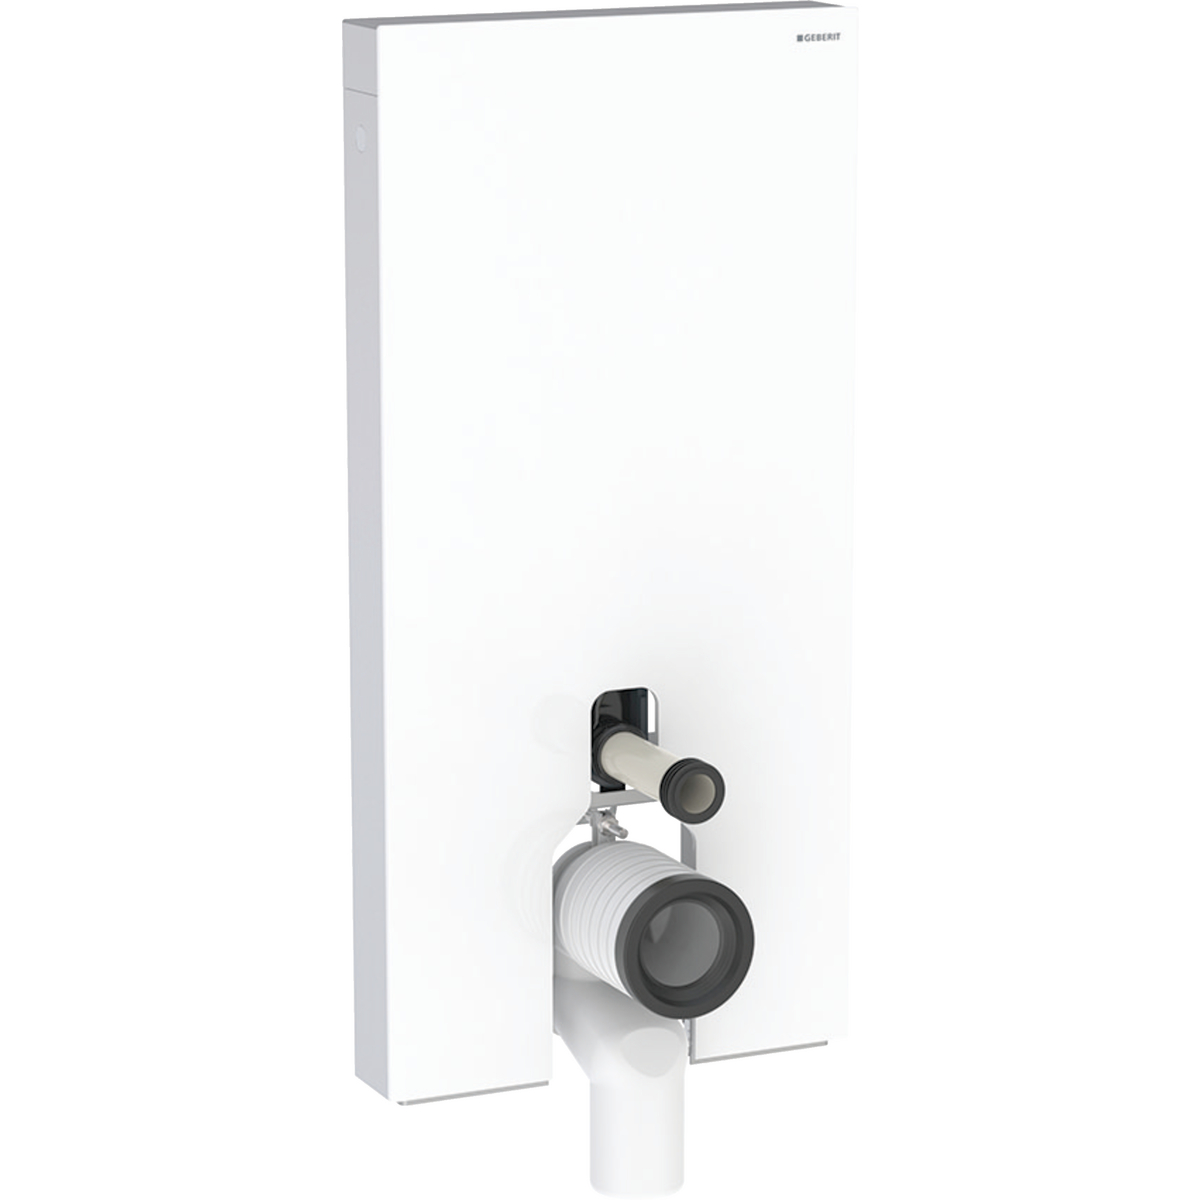 Monolith Sanitärmodul für Stand-WC, 101 cm, Frontverkleidung aus Glas: Glas weiß, Aluminium